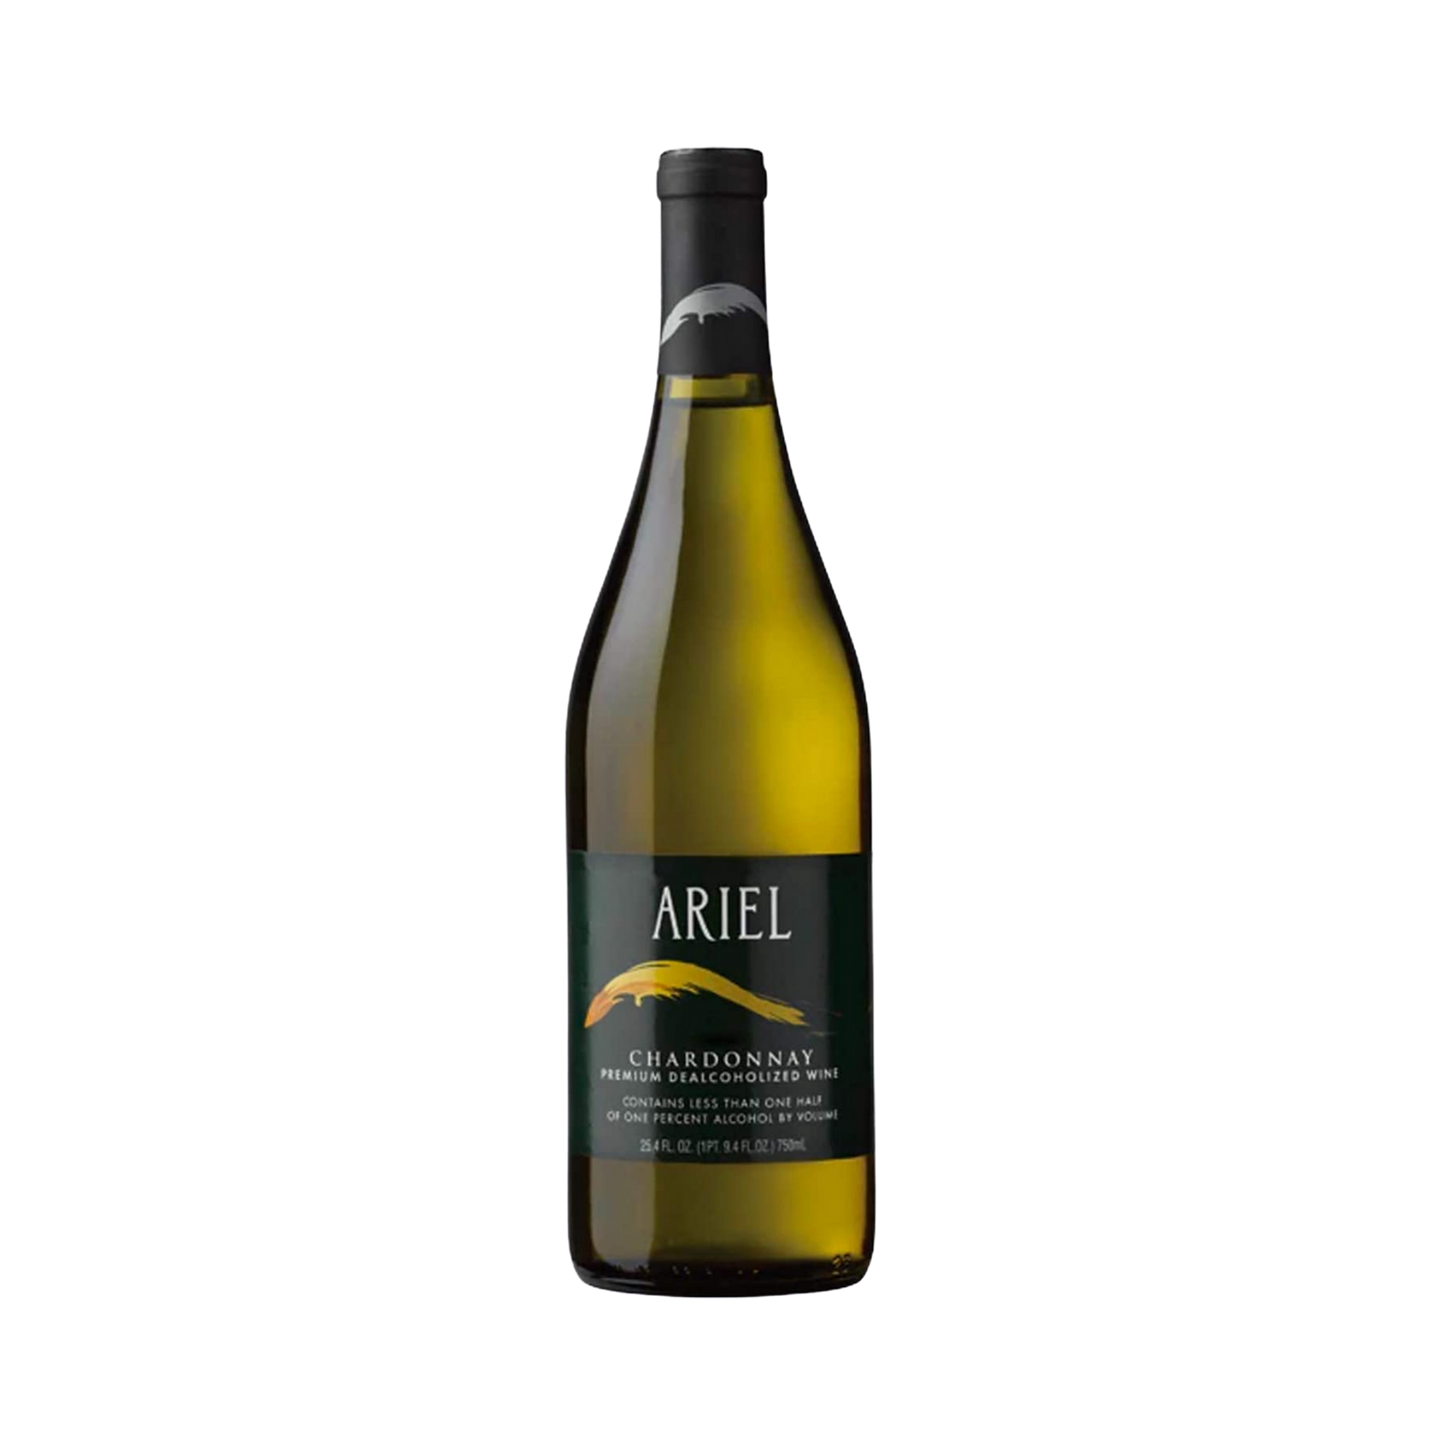 Ariel Chardonnay Premium Dealcoholized Wine